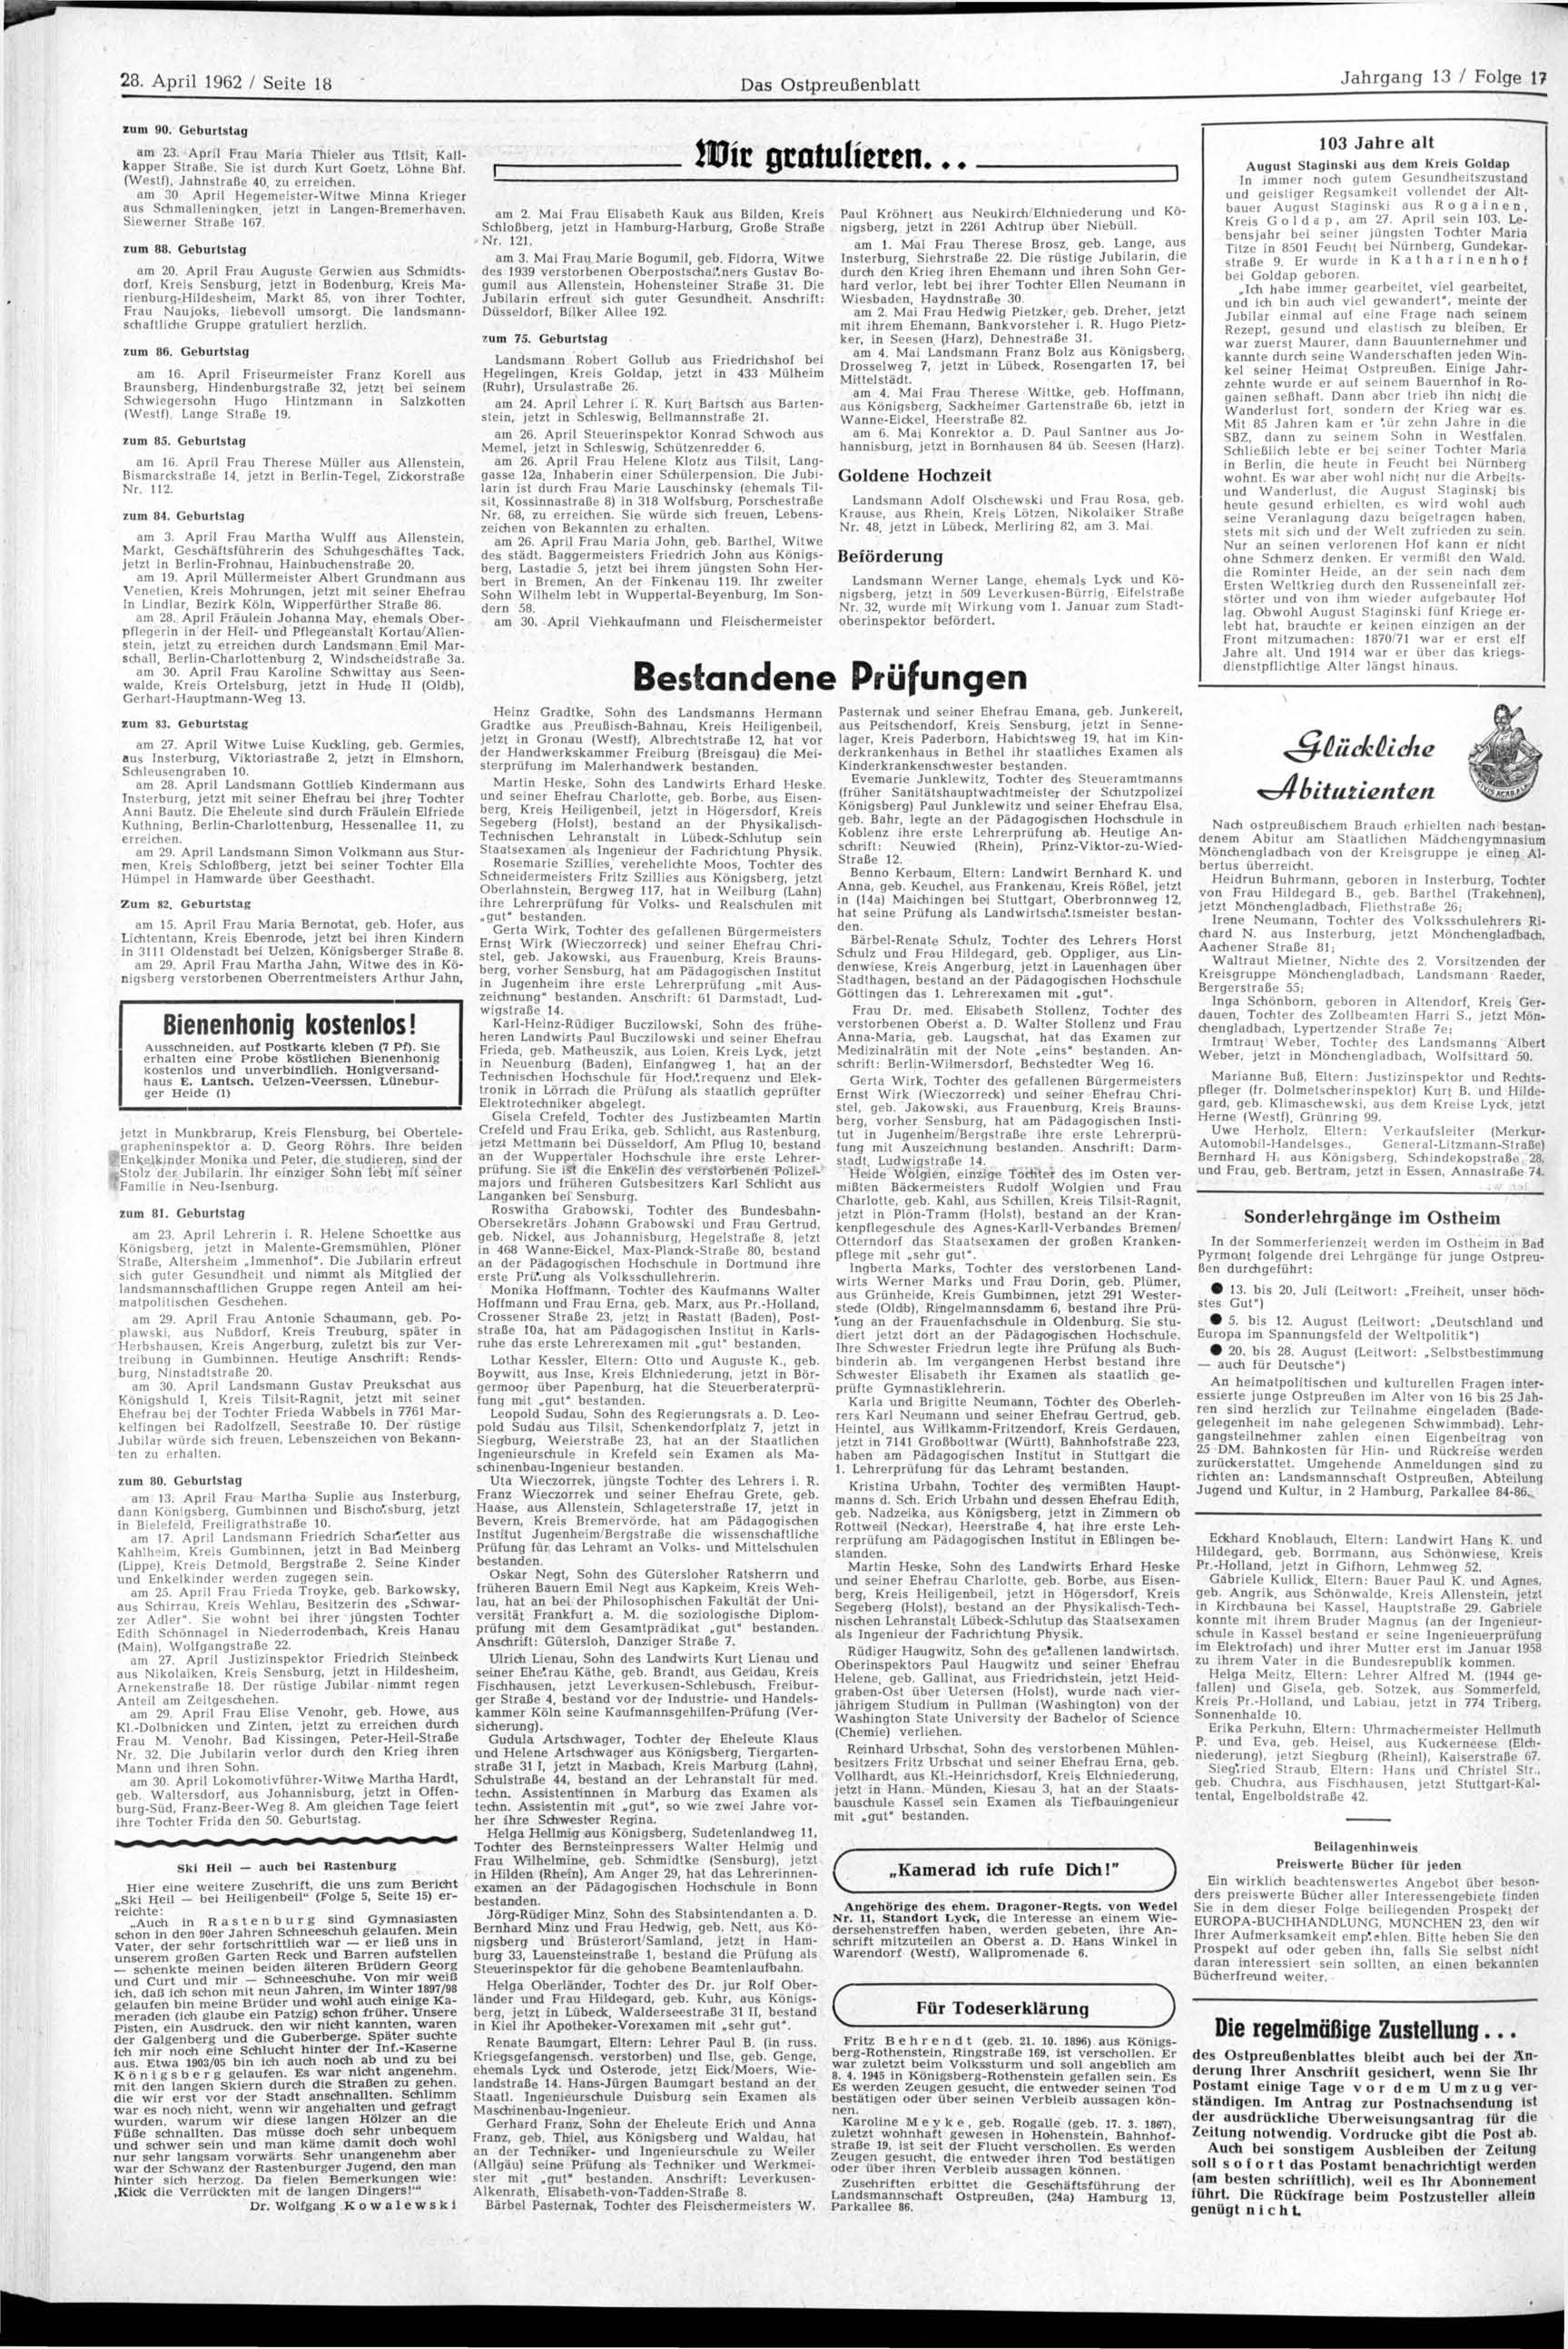 28. April 1962 / Seite 18 Das Ostpreußenblatt zum 90. Geburtstag am 23. April Frau Maria Thieler aus Tilsit, Kallkapper Straße. Sie ist durch Kurt Goetz, Löhne Bhf. (Westf), Jahnstraße 40.